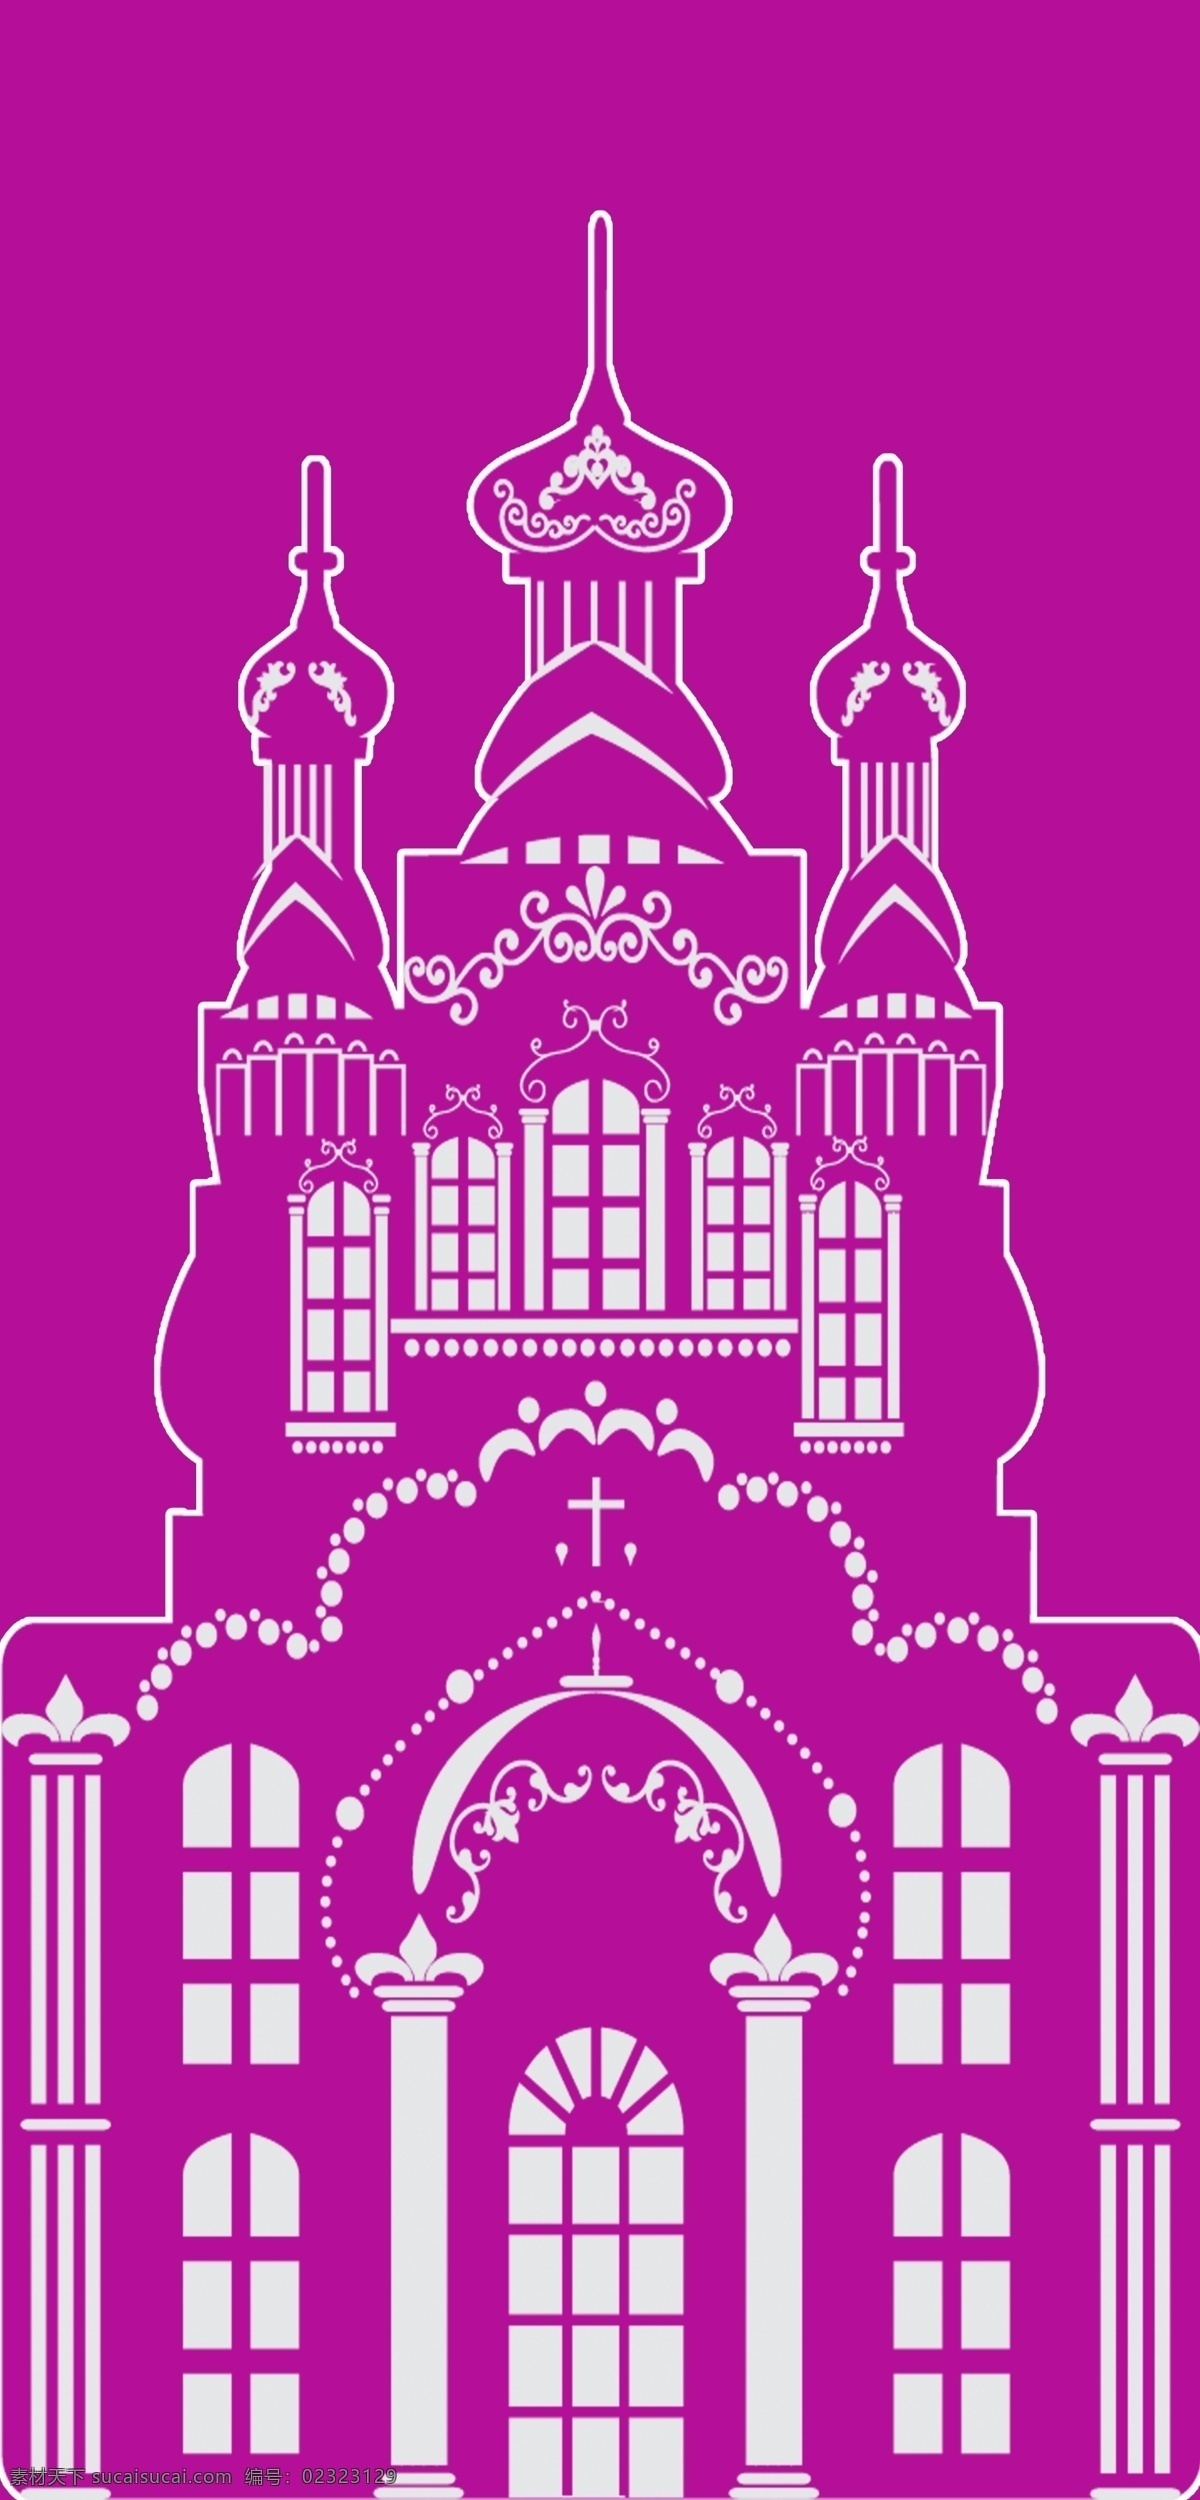 白色城堡 紫色 底 白色 城堡 婚礼 原创设计 其他原创设计